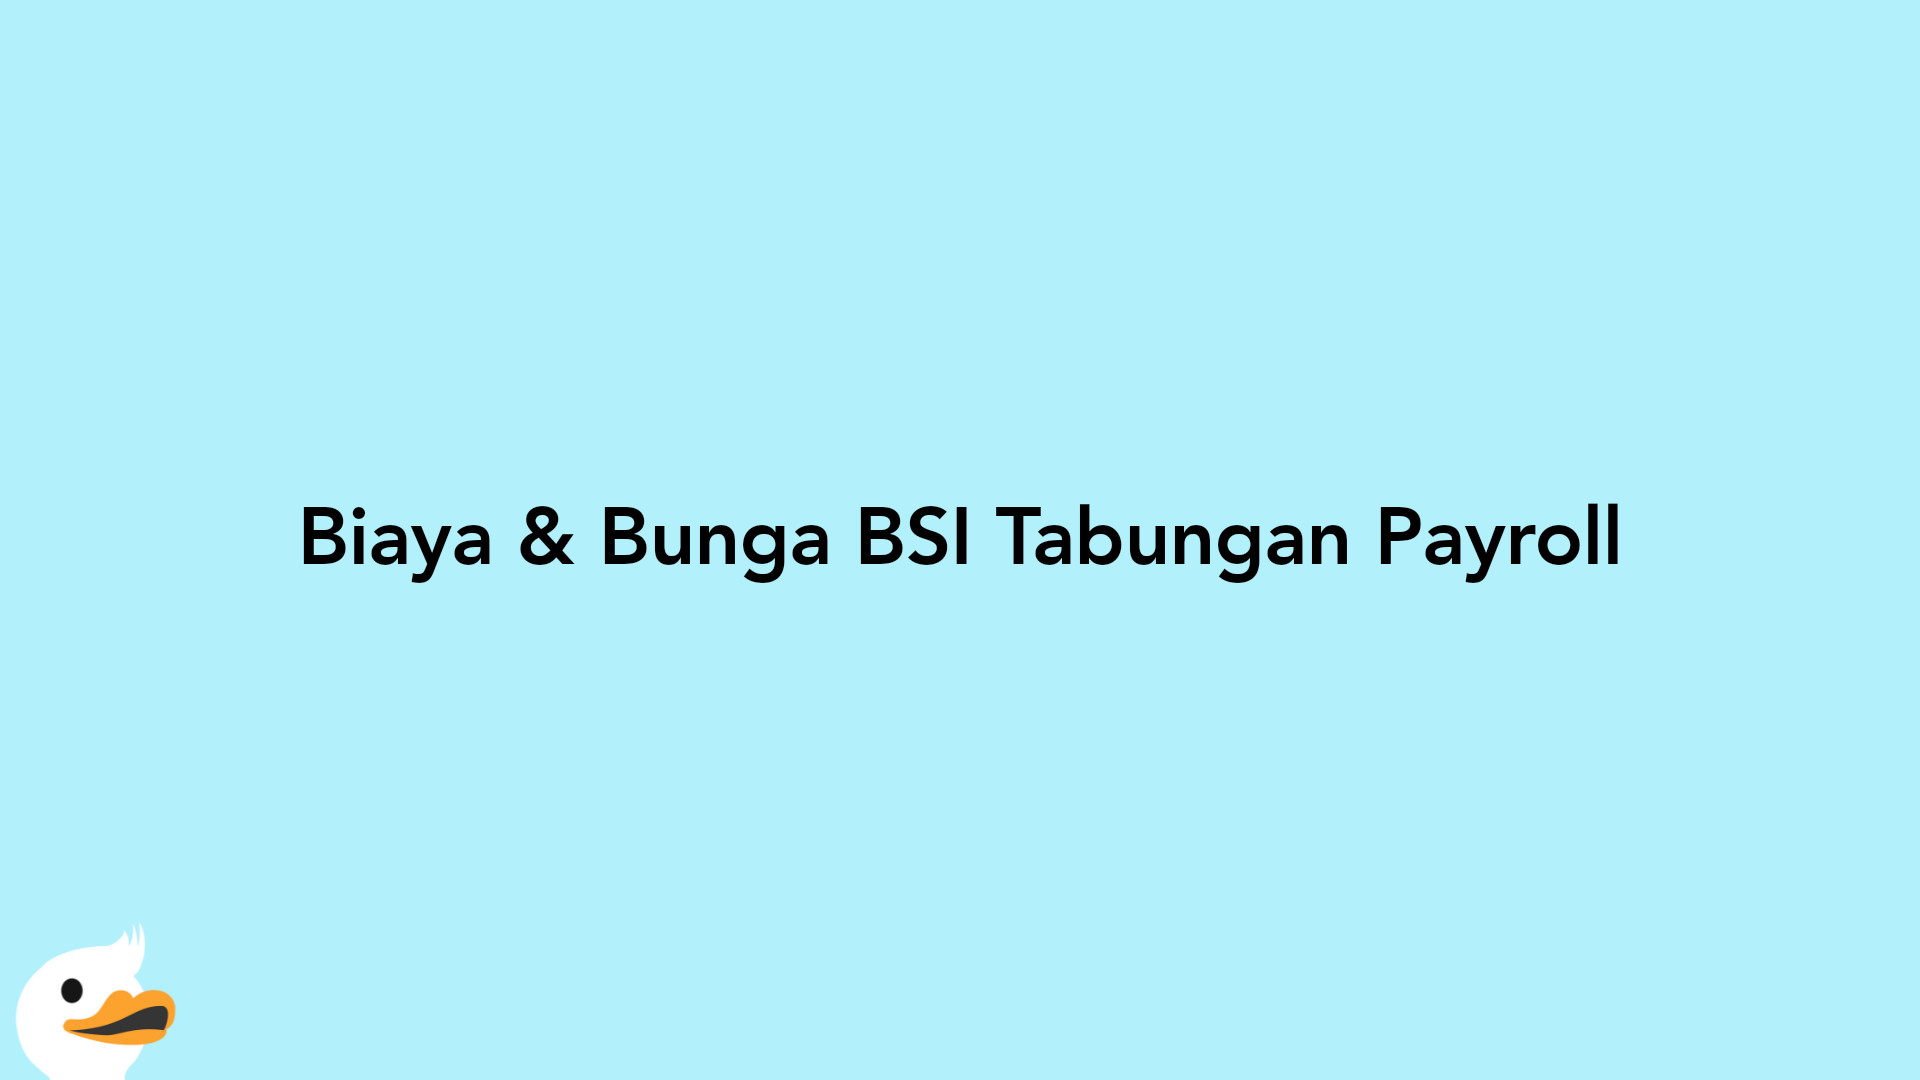 Biaya & Bunga BSI Tabungan Payroll